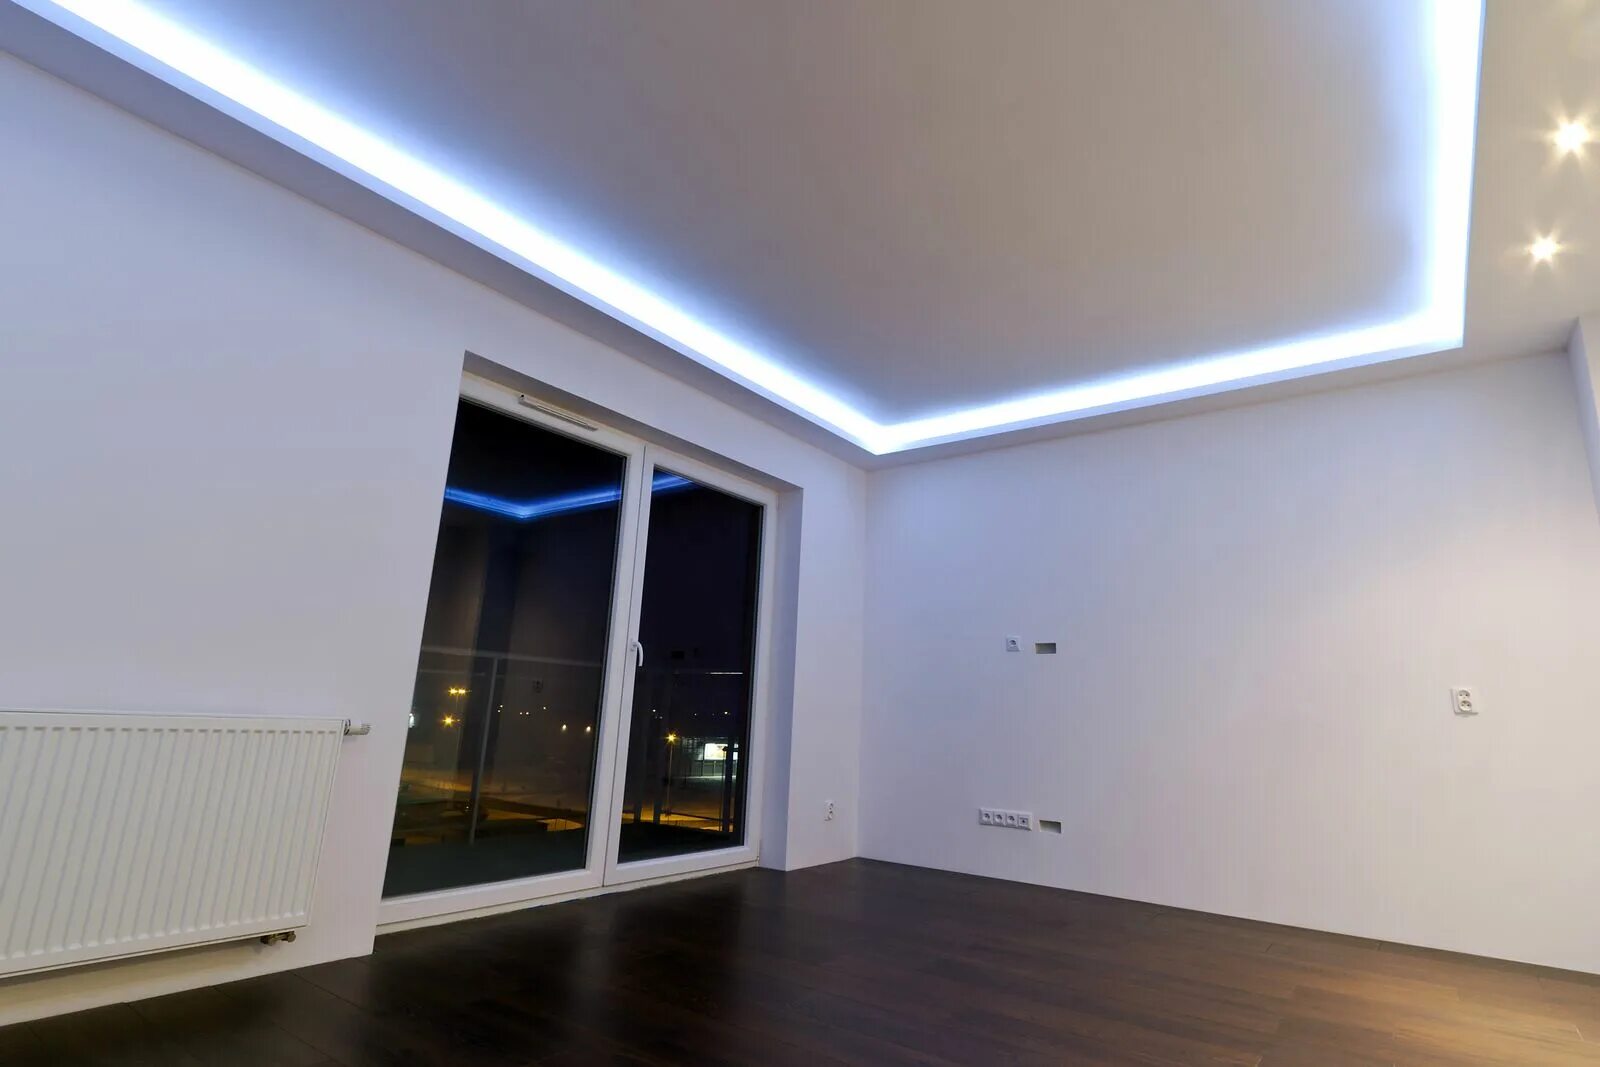 Купить потолки с подсветкой. Потолок с подсветкой. Диодная подсветка потолка. Потолок с подсветкой по периметру. Диодная лента на потолок.